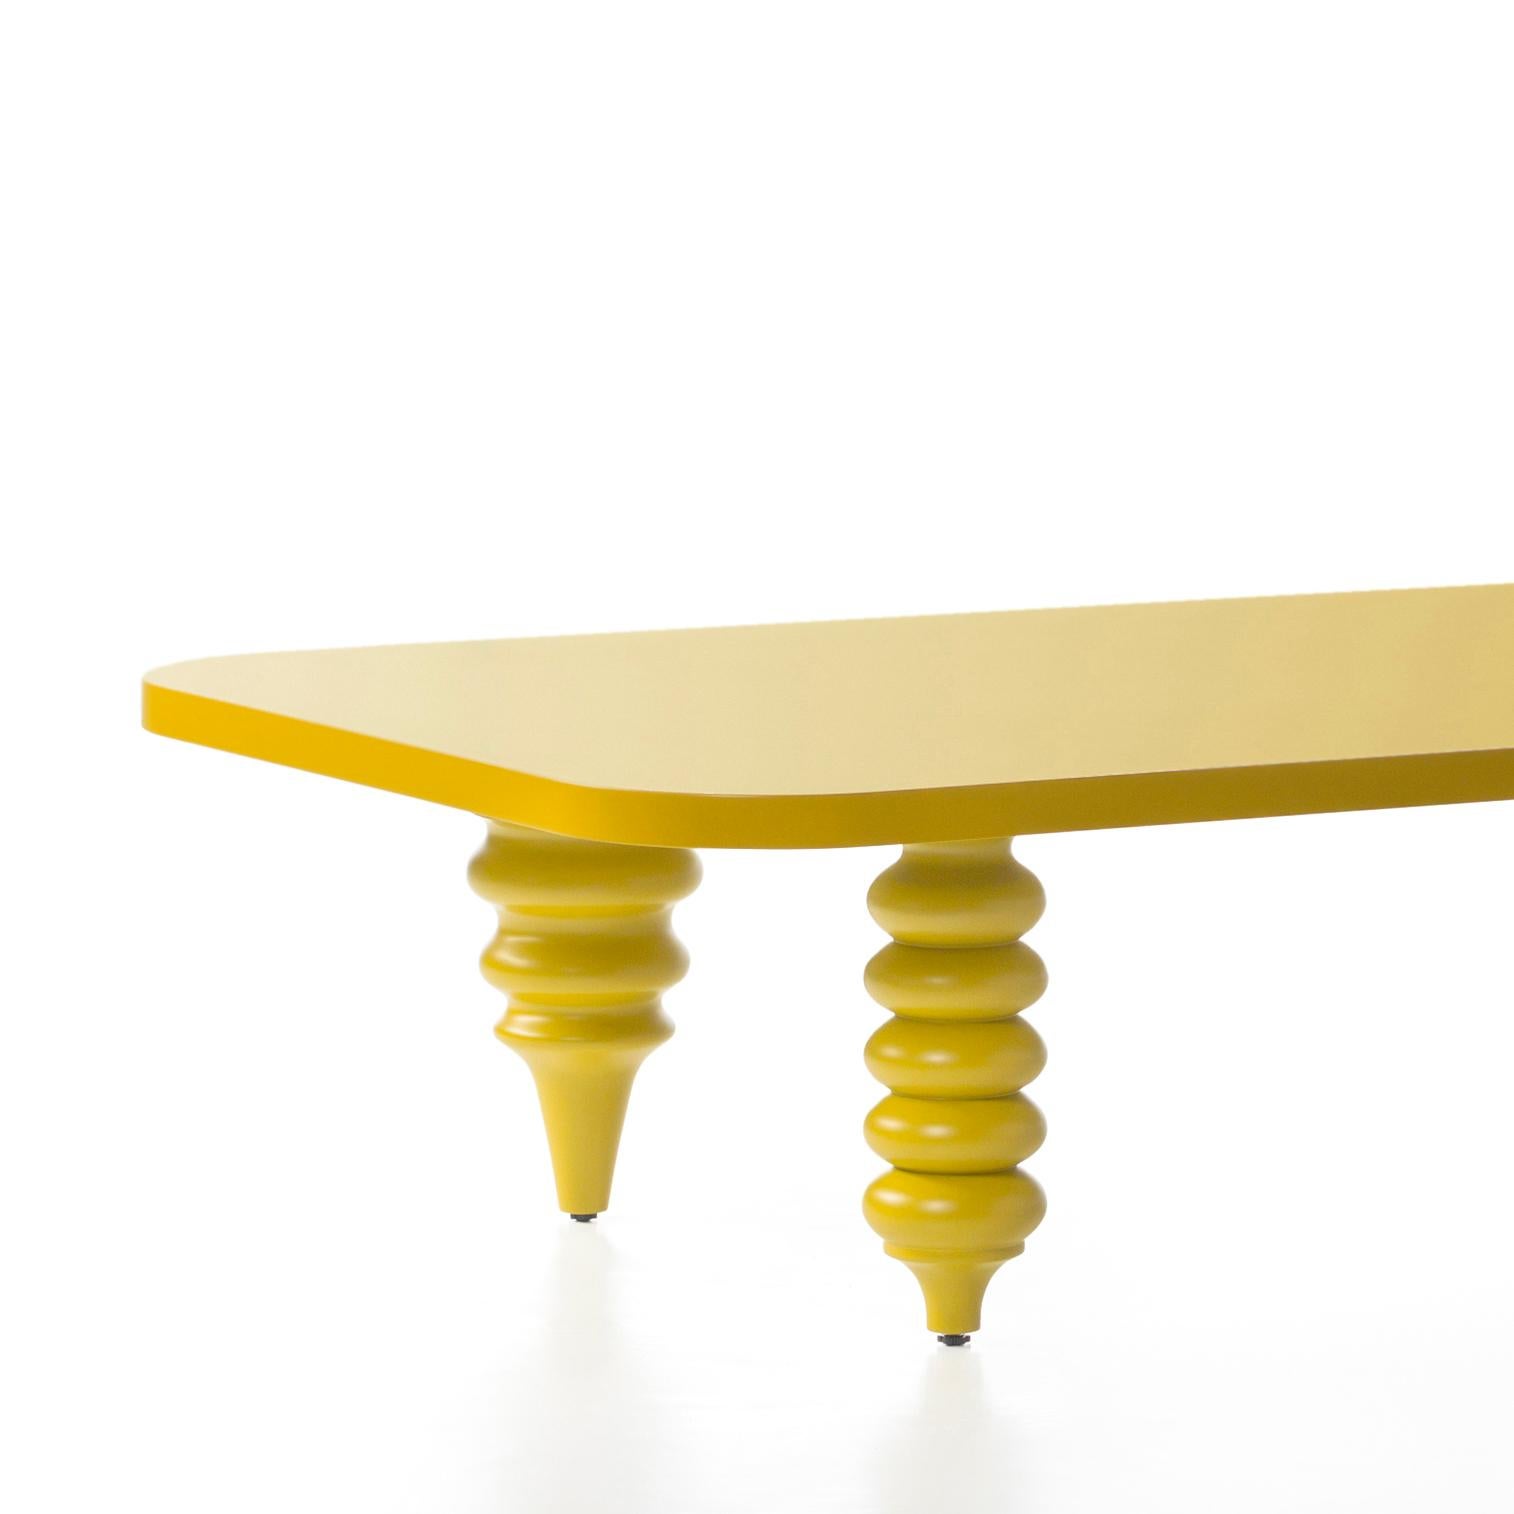 Table basse conçue par Jaime Hayon et fabriquée à Barcelone par BD.

Base en MDF et pieds en aulne massif tourné, laqués en jaune.

Dimensions : 50 x 150 x H 35 cm.